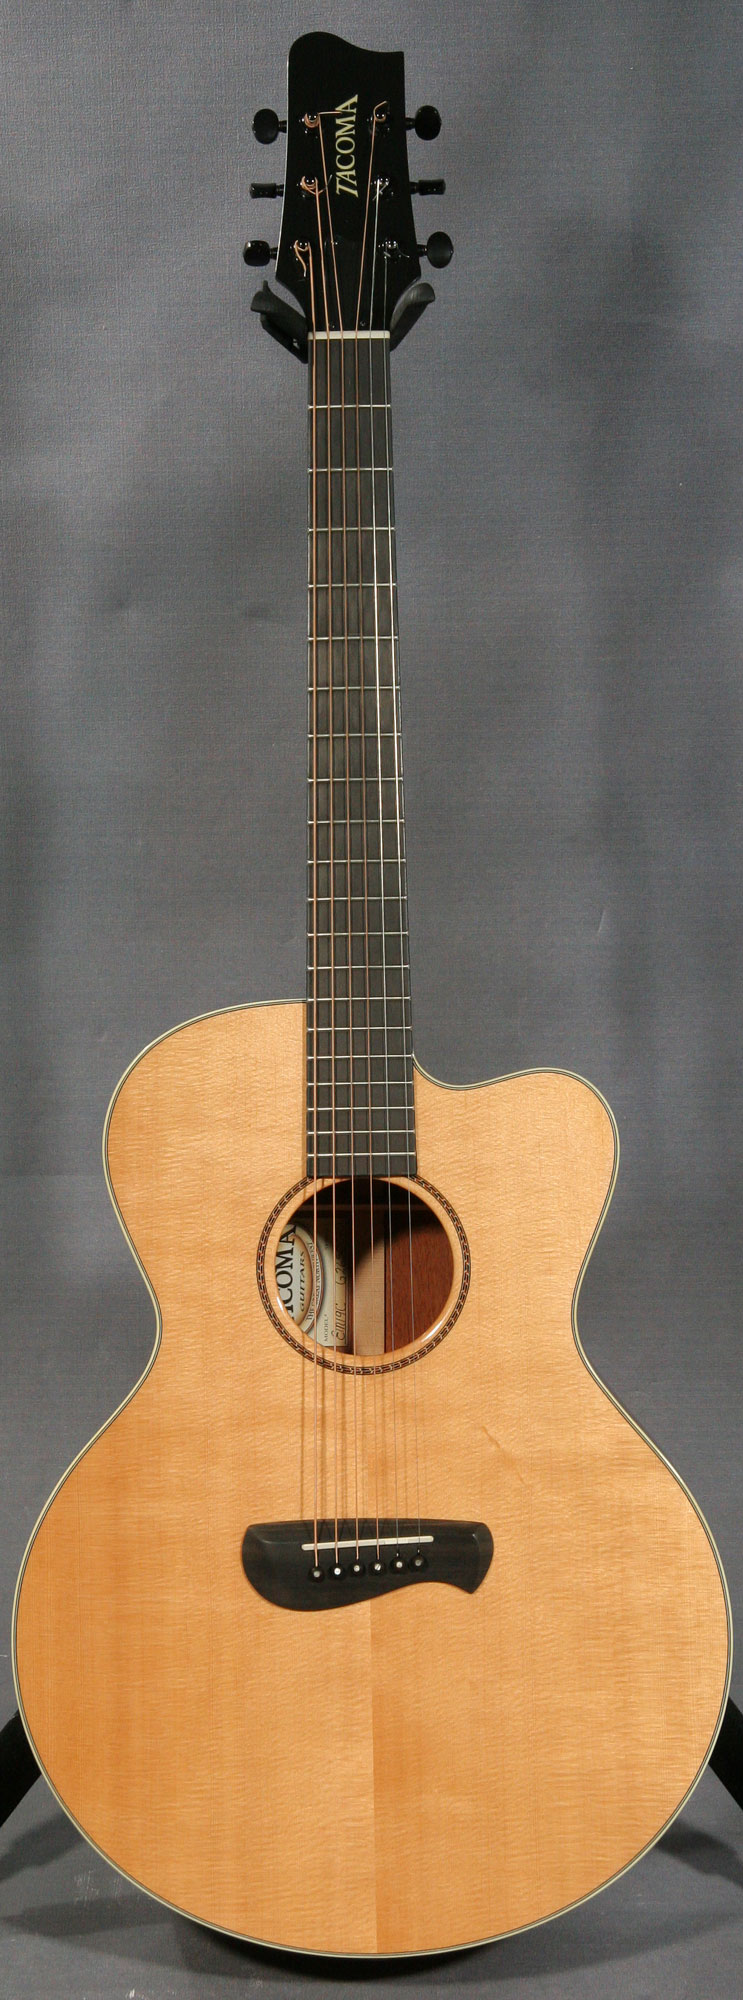 Tacoma EM19C Acoustic Guitar - Ed Roman Guitars